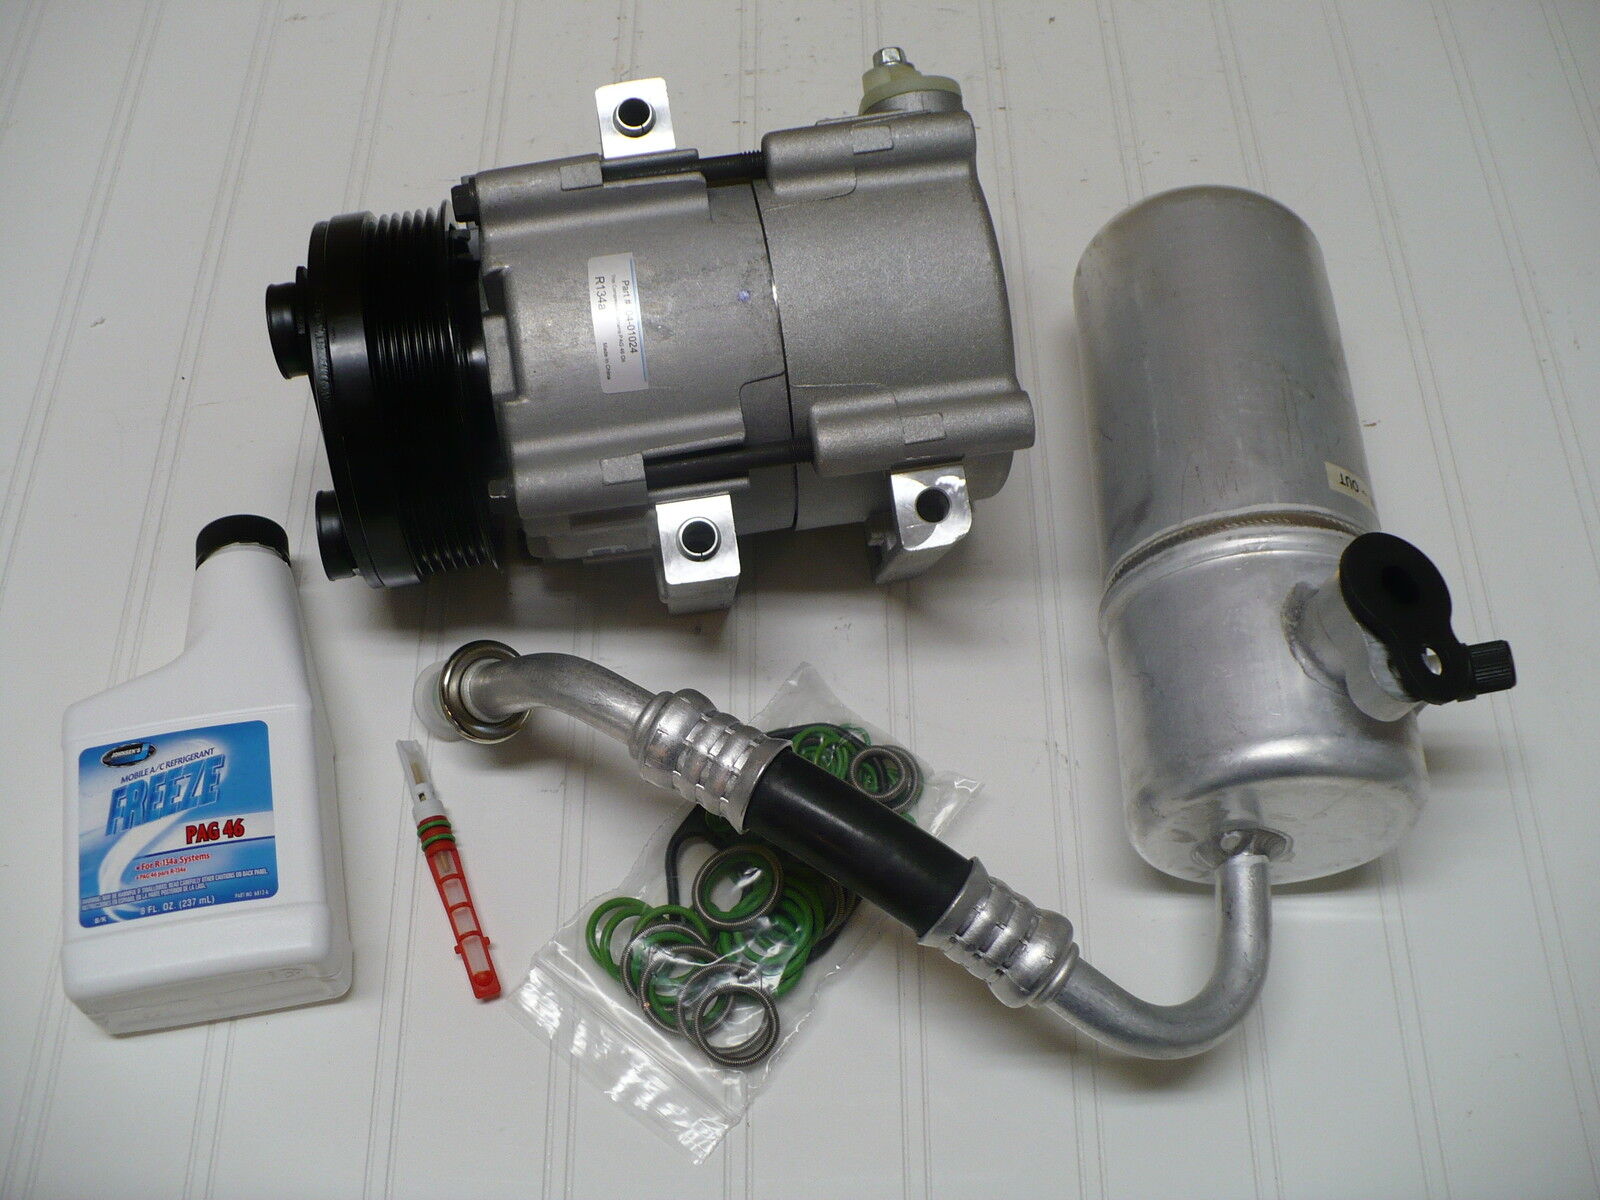 New A/C AC Compressor Kit Fits 2004-2006 Ford F-150 (4.6L, 5.4L only)